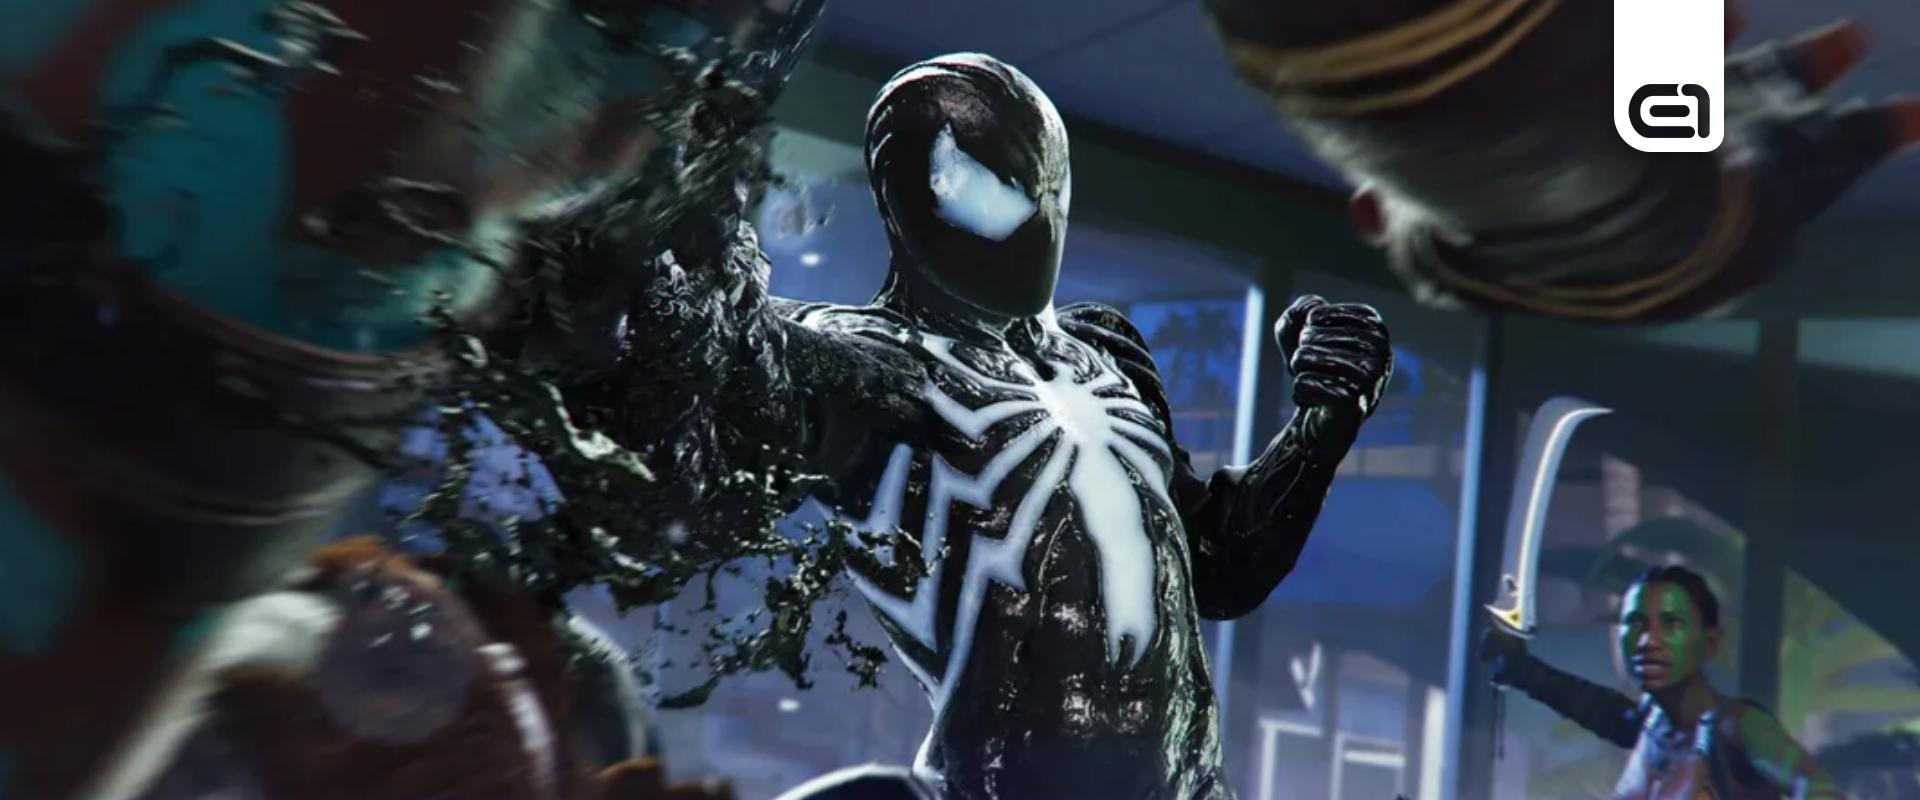 Kiderült milyen hosszú lesz a Marvel's Spider-Man 2!